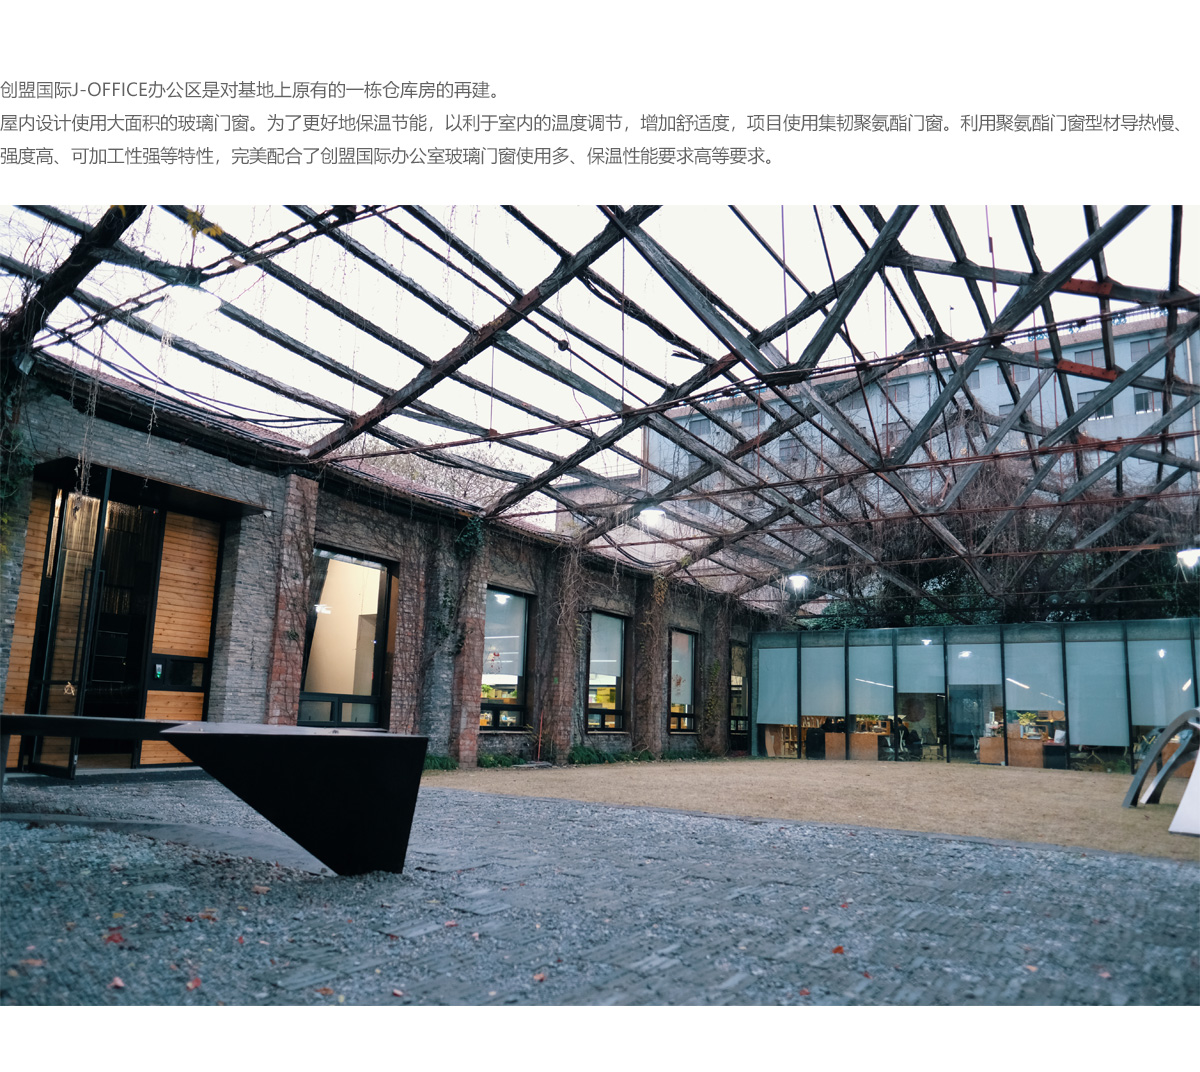 综合甲级建筑设计院上海创盟国际建筑设计院办公室_02.jpg